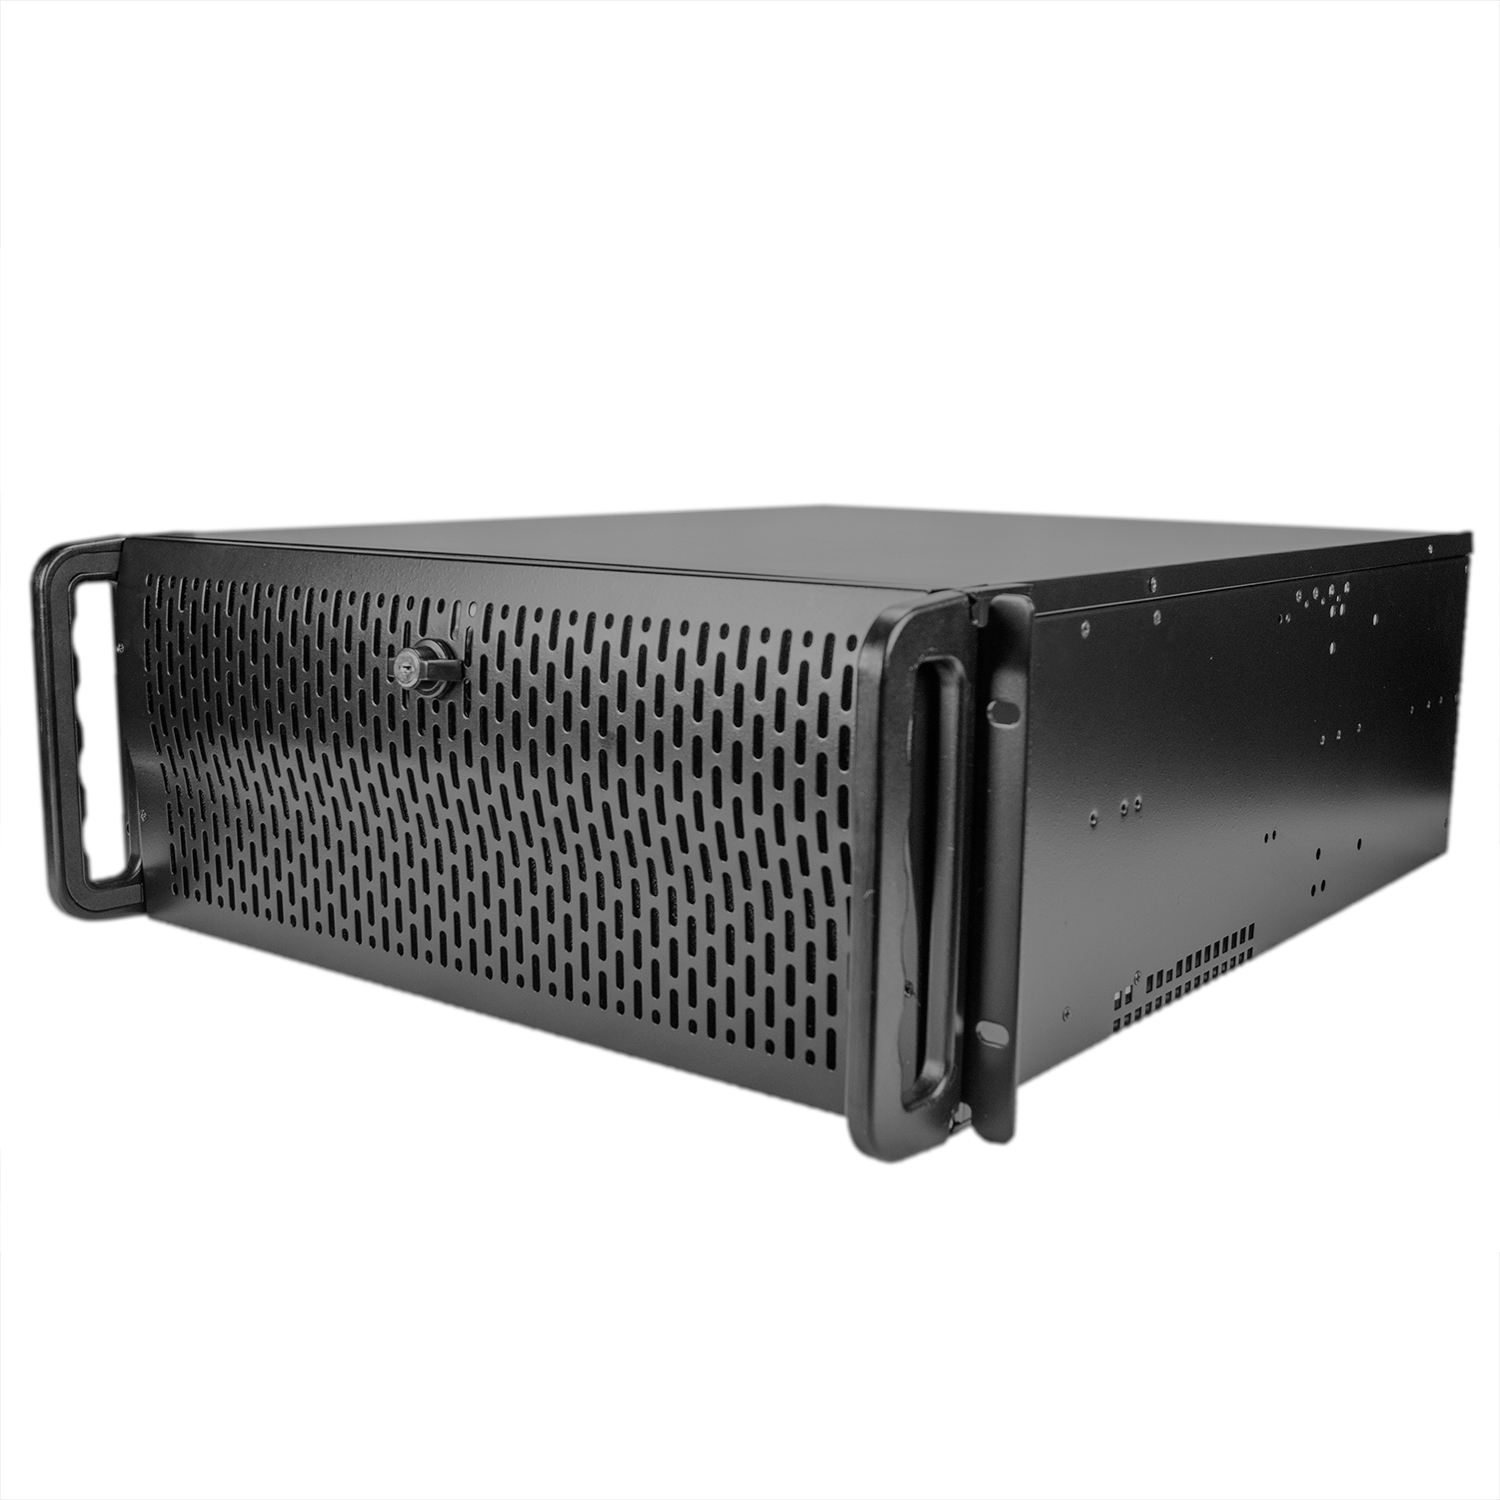 Серверный корпус 4U NR-D415-2 2x600Вт (EATX 12x13, 9x5.25ext or 12x3.5"int, 550mm) черный